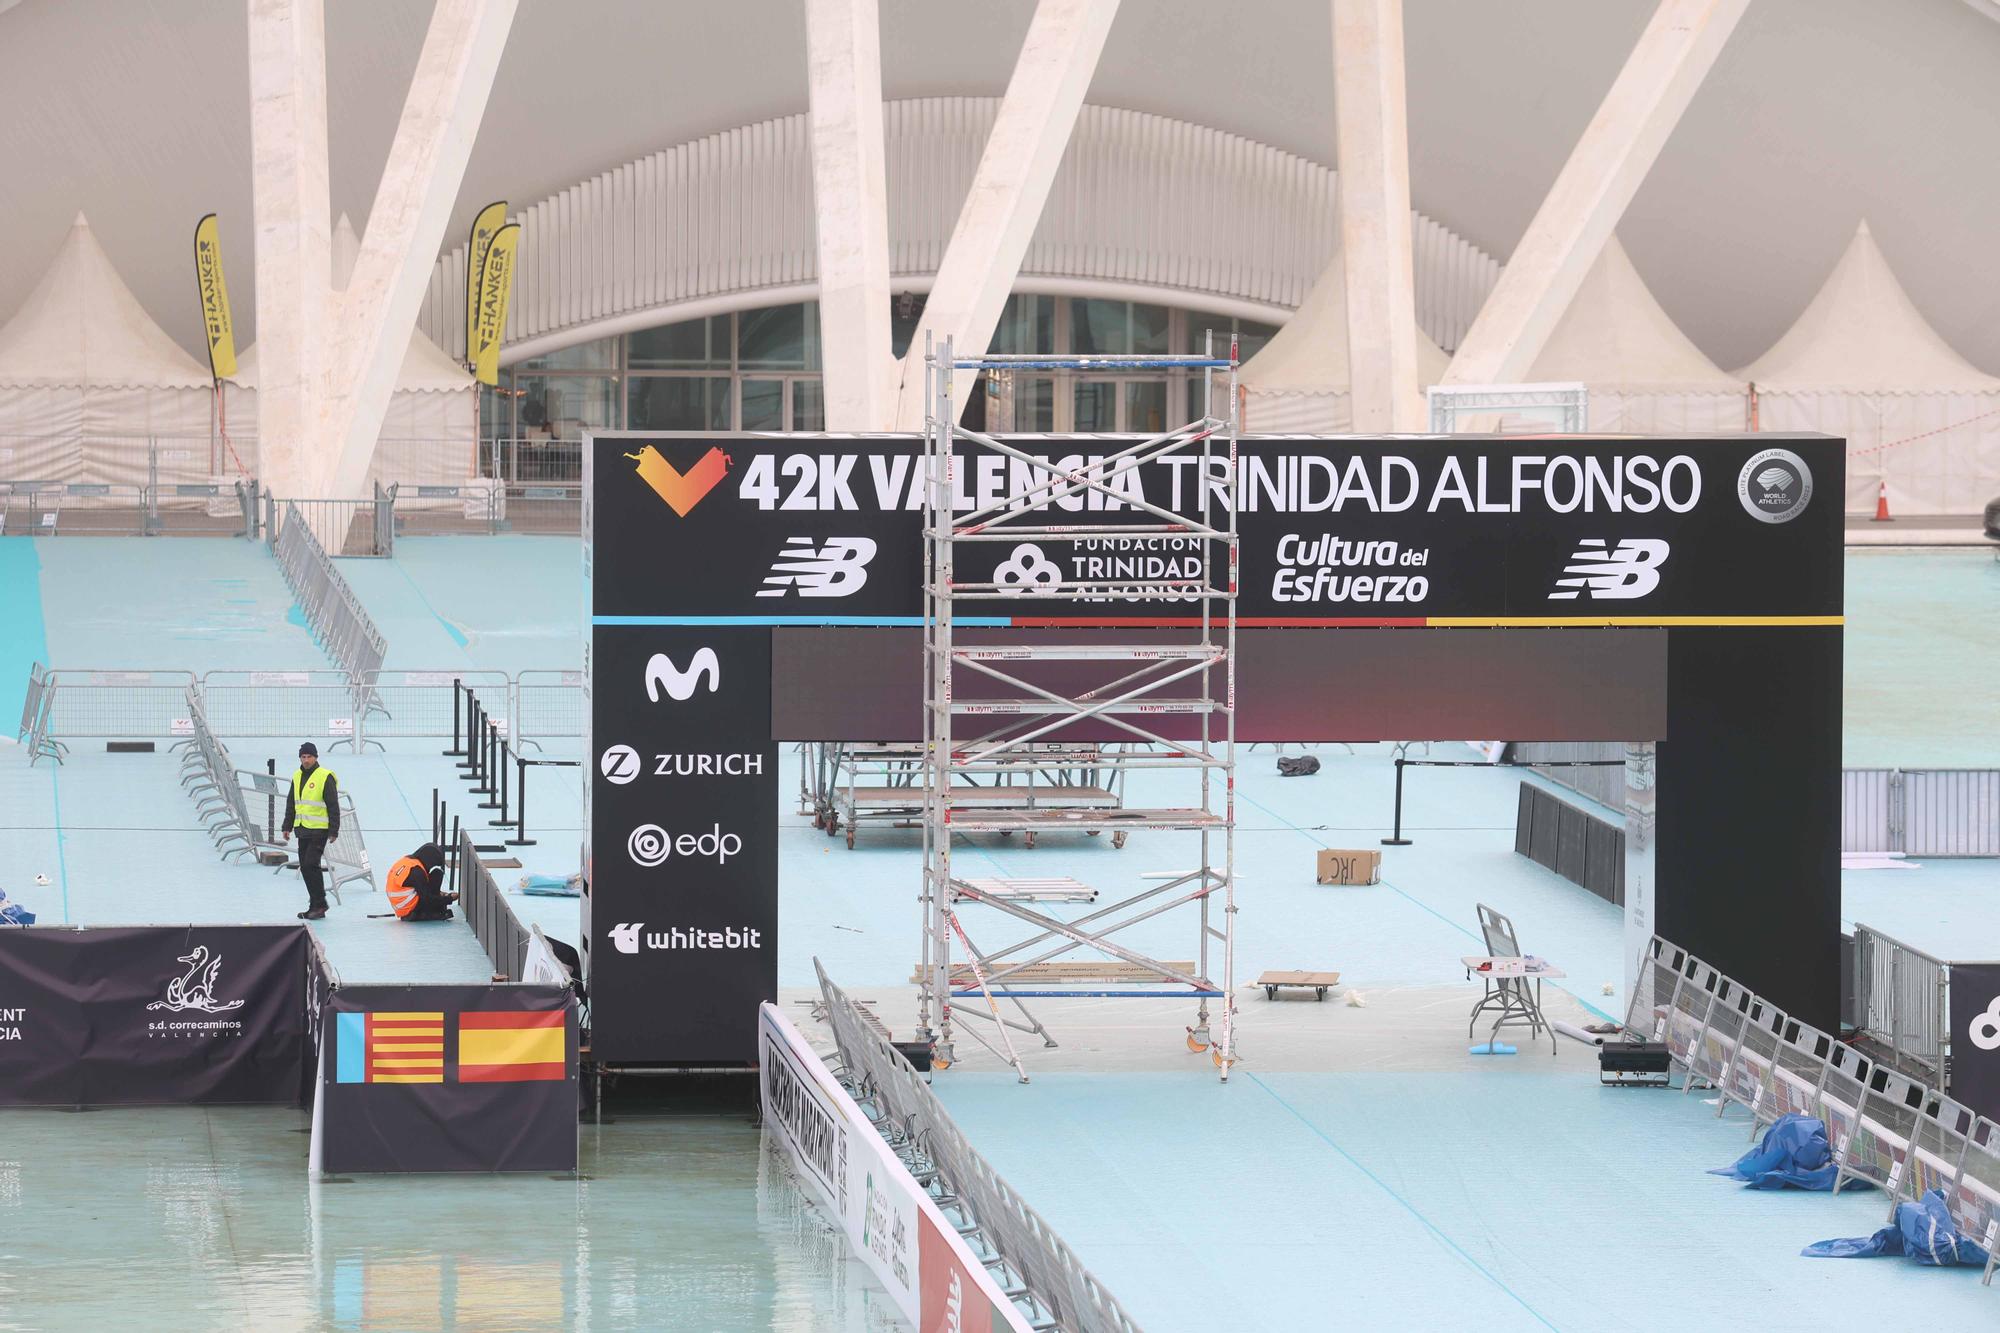 Preparativos para el Maratón Valencia Trinidad Alfonso 2022